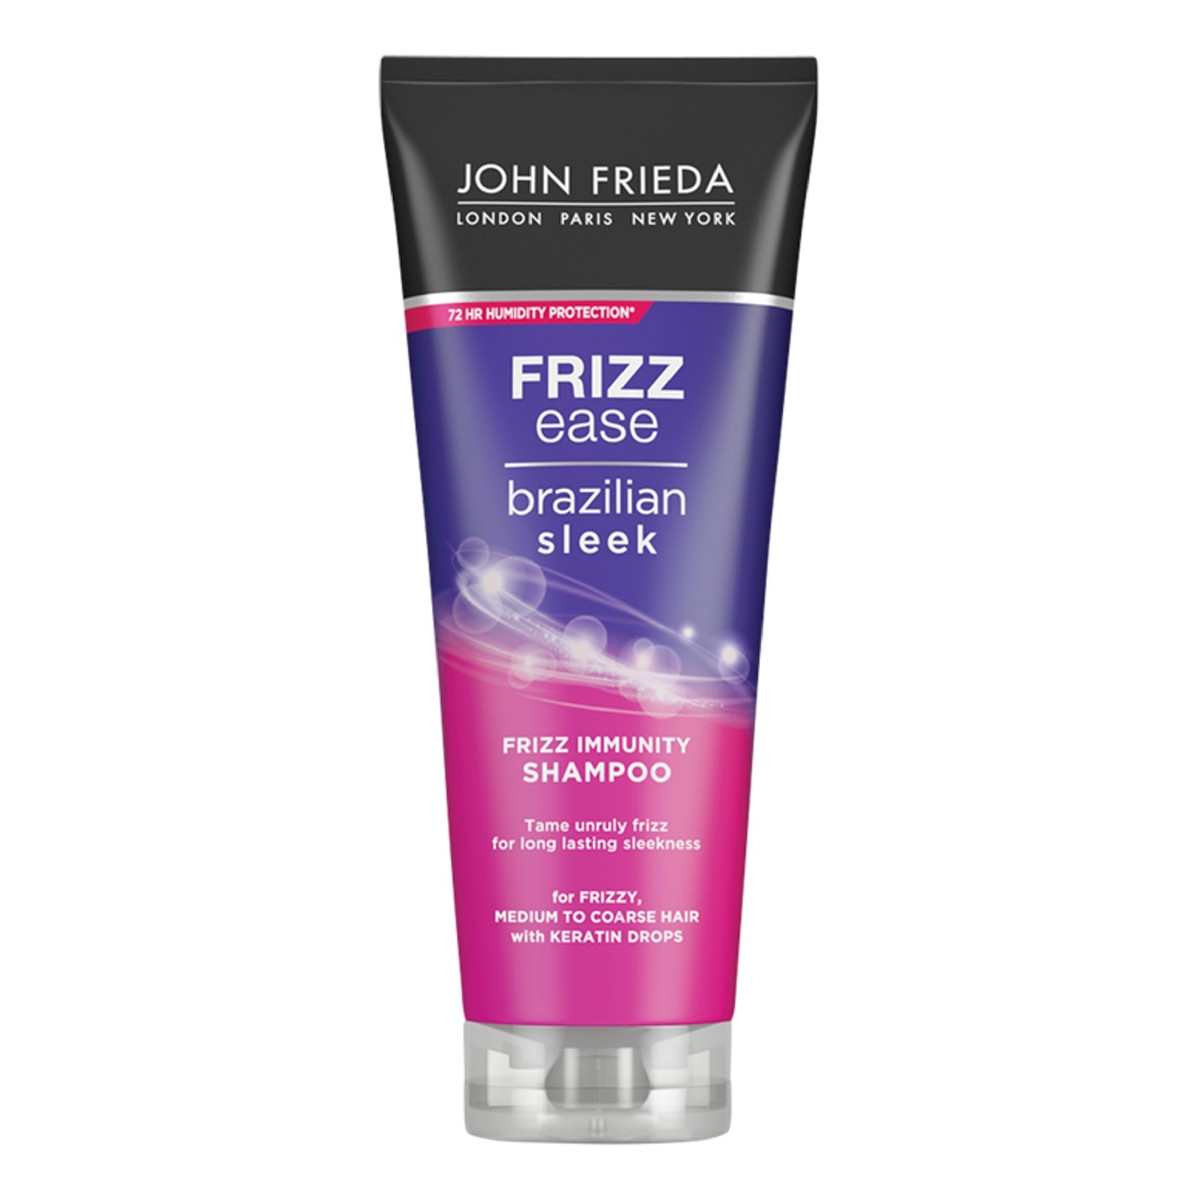 John Frieda Frizz-ease brazilian sleek wygładzający szampon do włosów 250ml